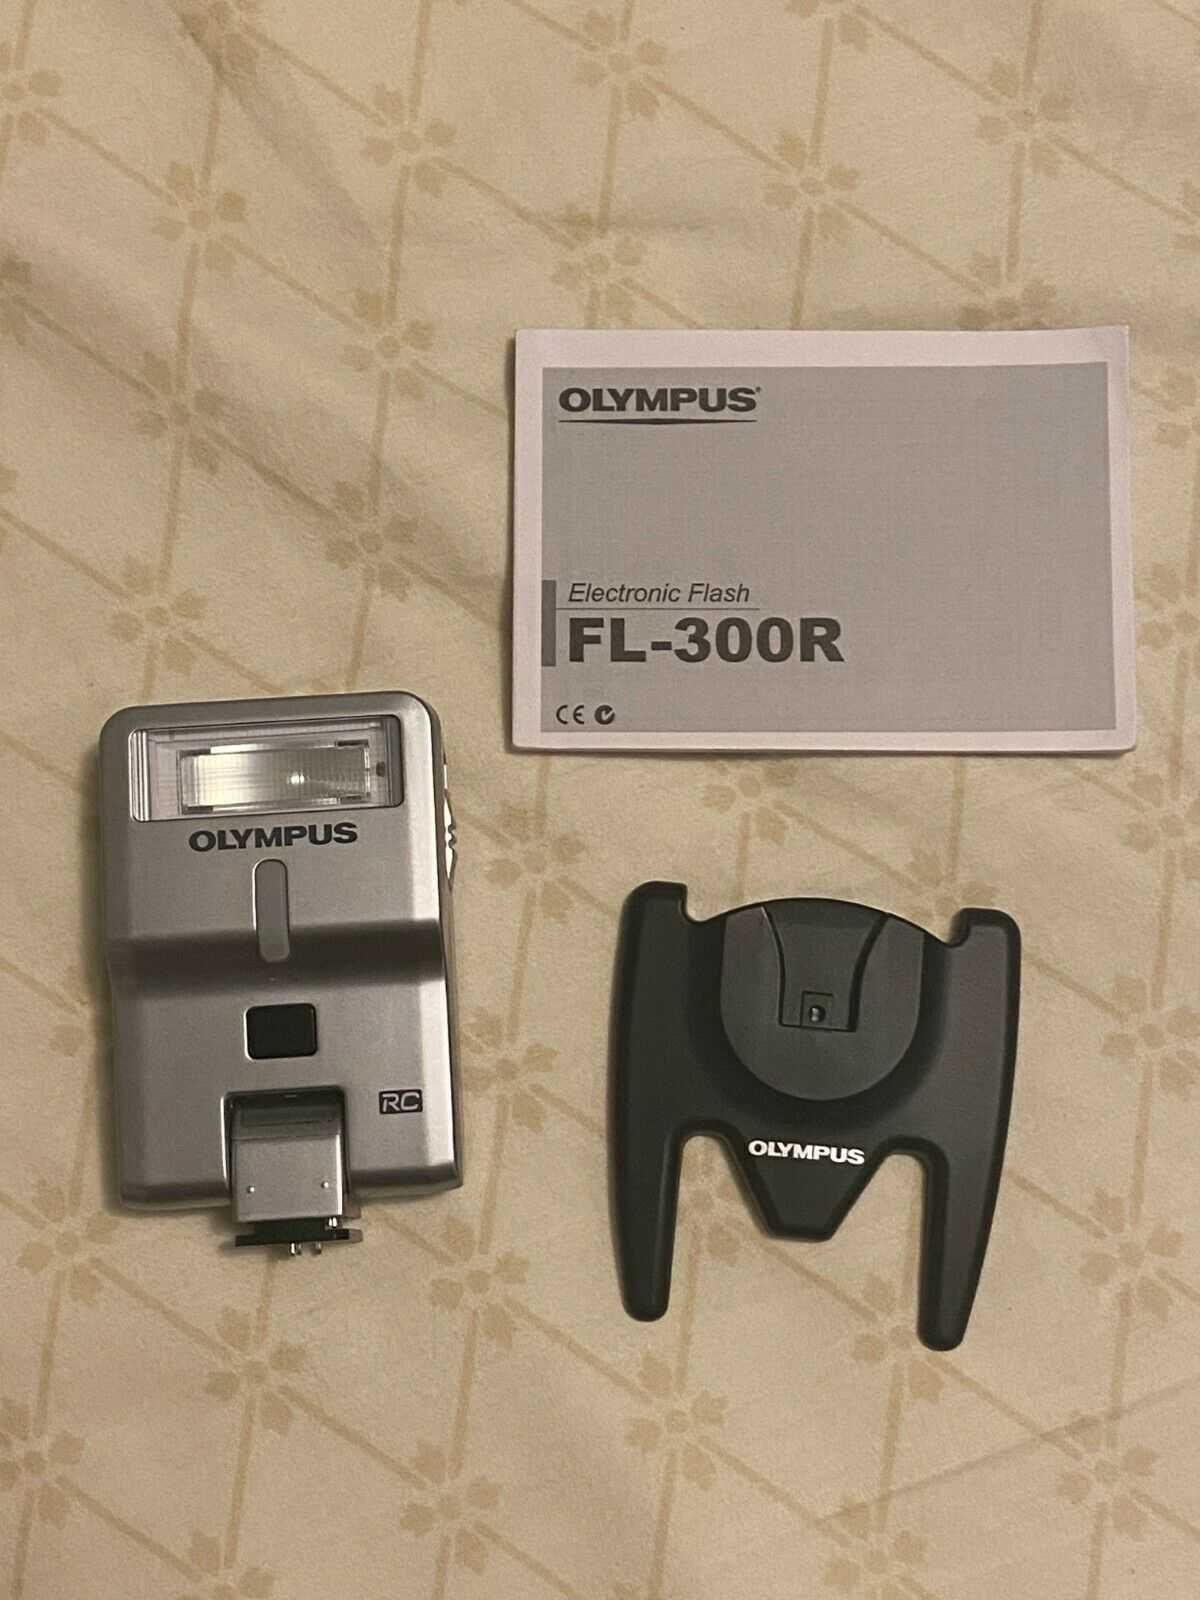 Фотовспышка olympus fl-600r купить от 20890 руб в самаре, сравнить цены, отзывы, видео обзоры и характеристики